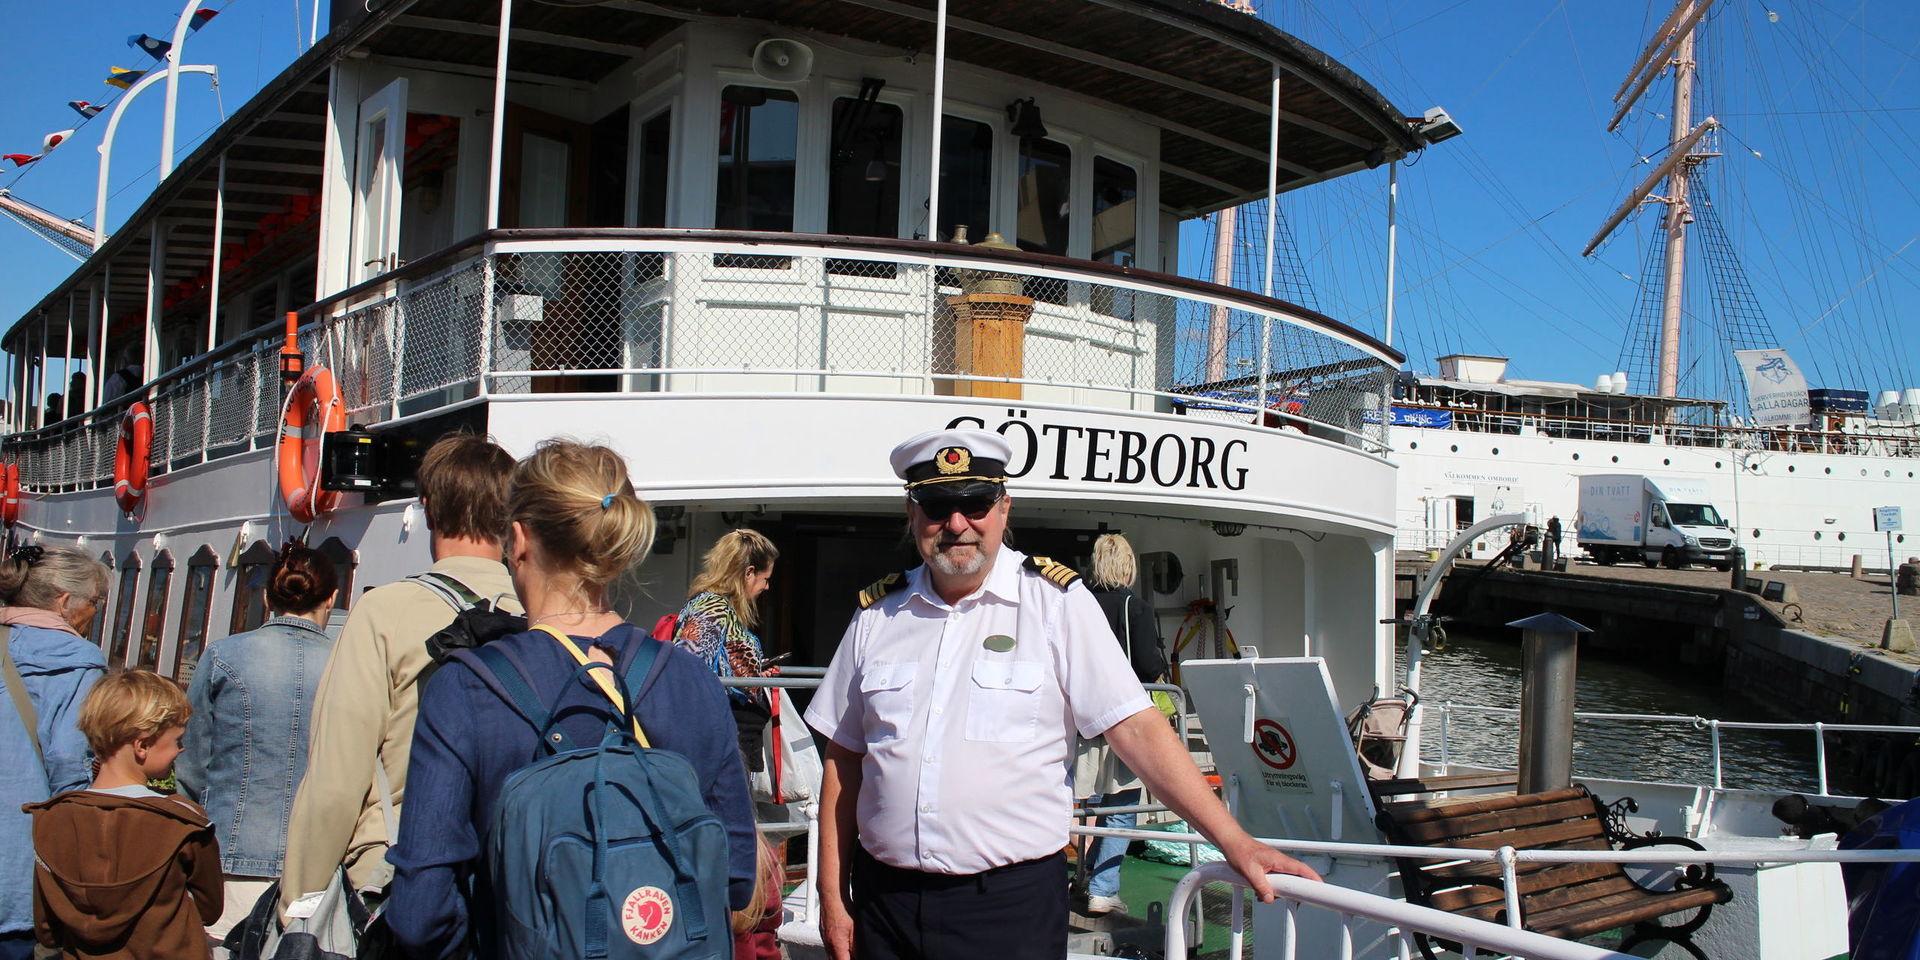 En sjöman älskar havets våg. Och det allra mesta i Göran Ruckmans yrkesliv har handlat om båtar och hav. Sjömanslivet har fört honom till många spännande platser runt om i världen, men numera nöjer han sig med att tuffa runt i Göteborgs skärgård.